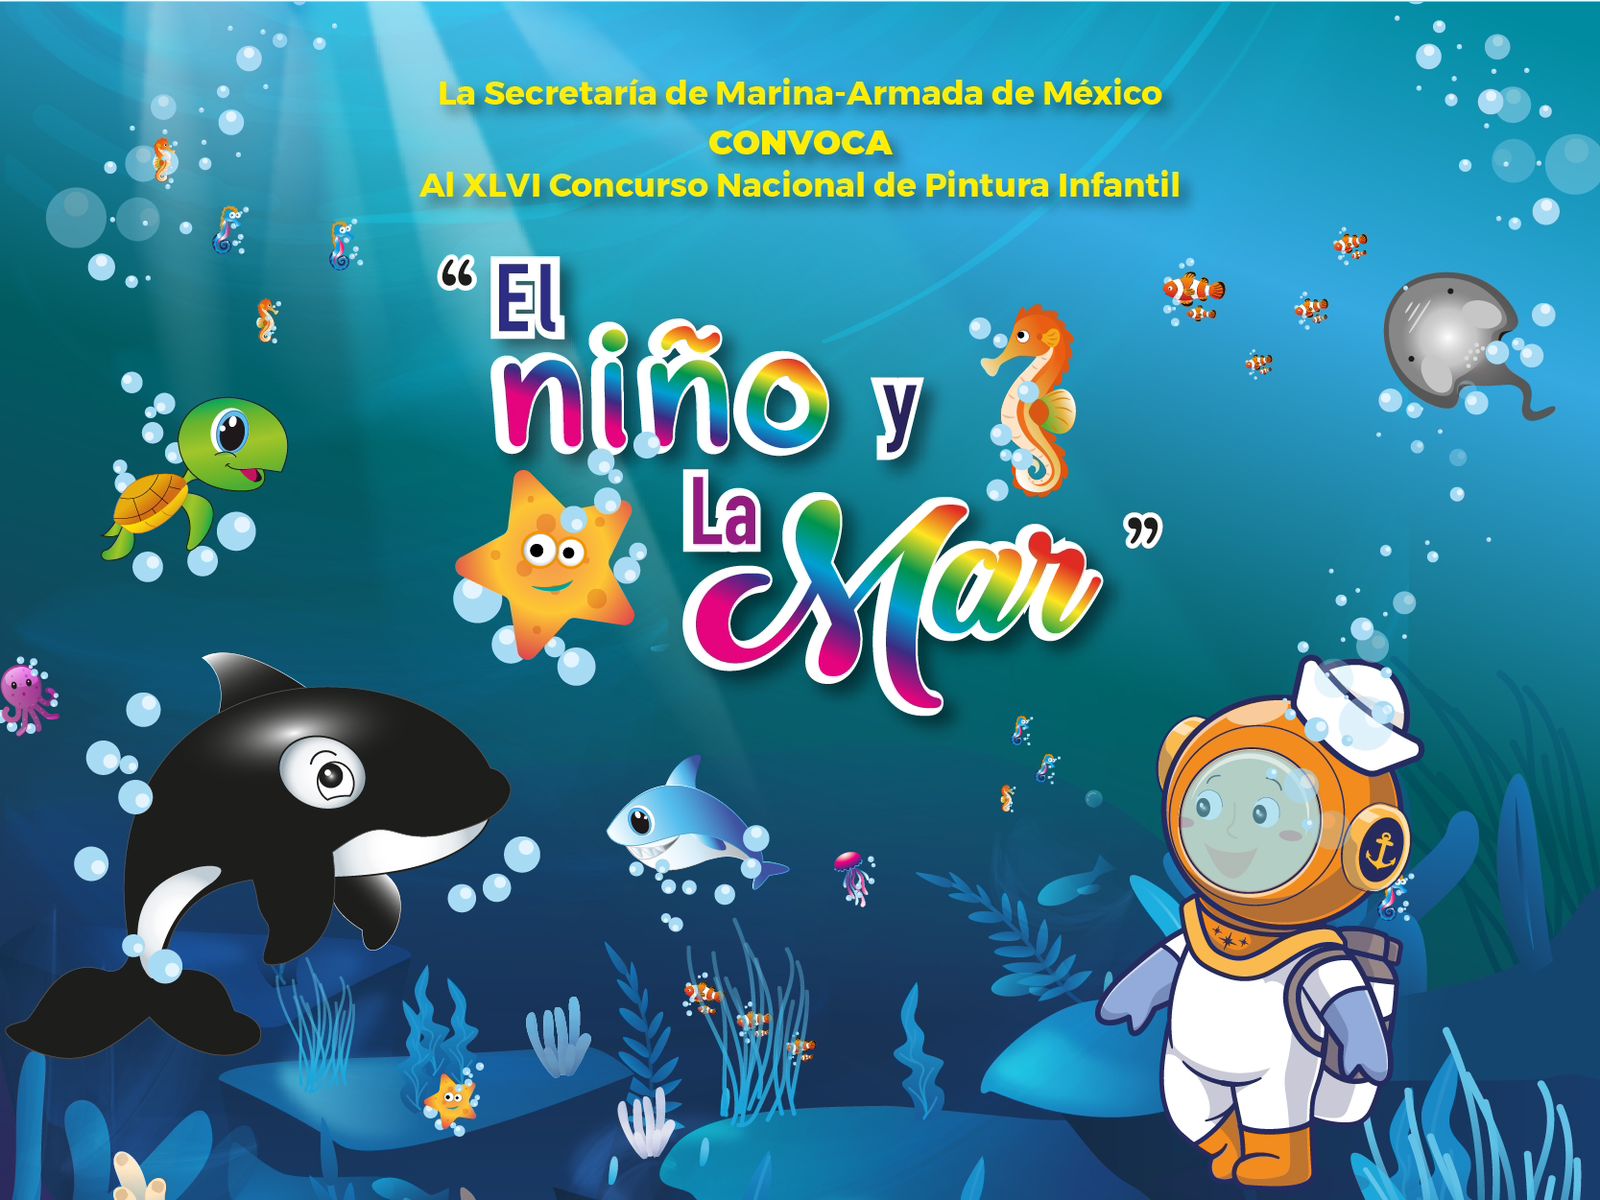 Marina invita a participar en el concurso nacional de pintura infantil “El Niño y La Mar”